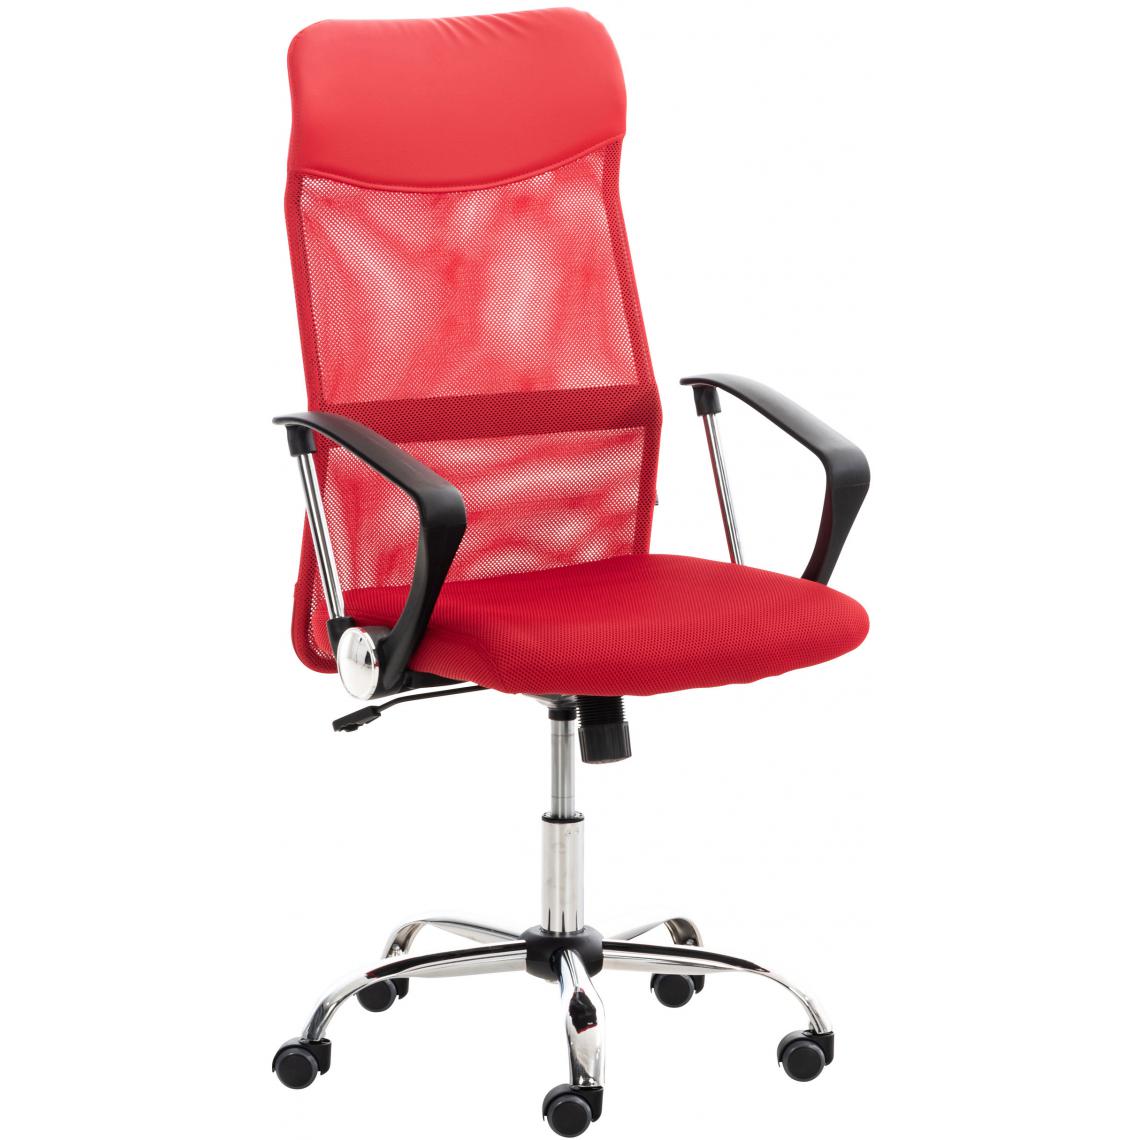 Icaverne - Admirable Chaise de bureau categorie Rabat couleur rouge - Chaises